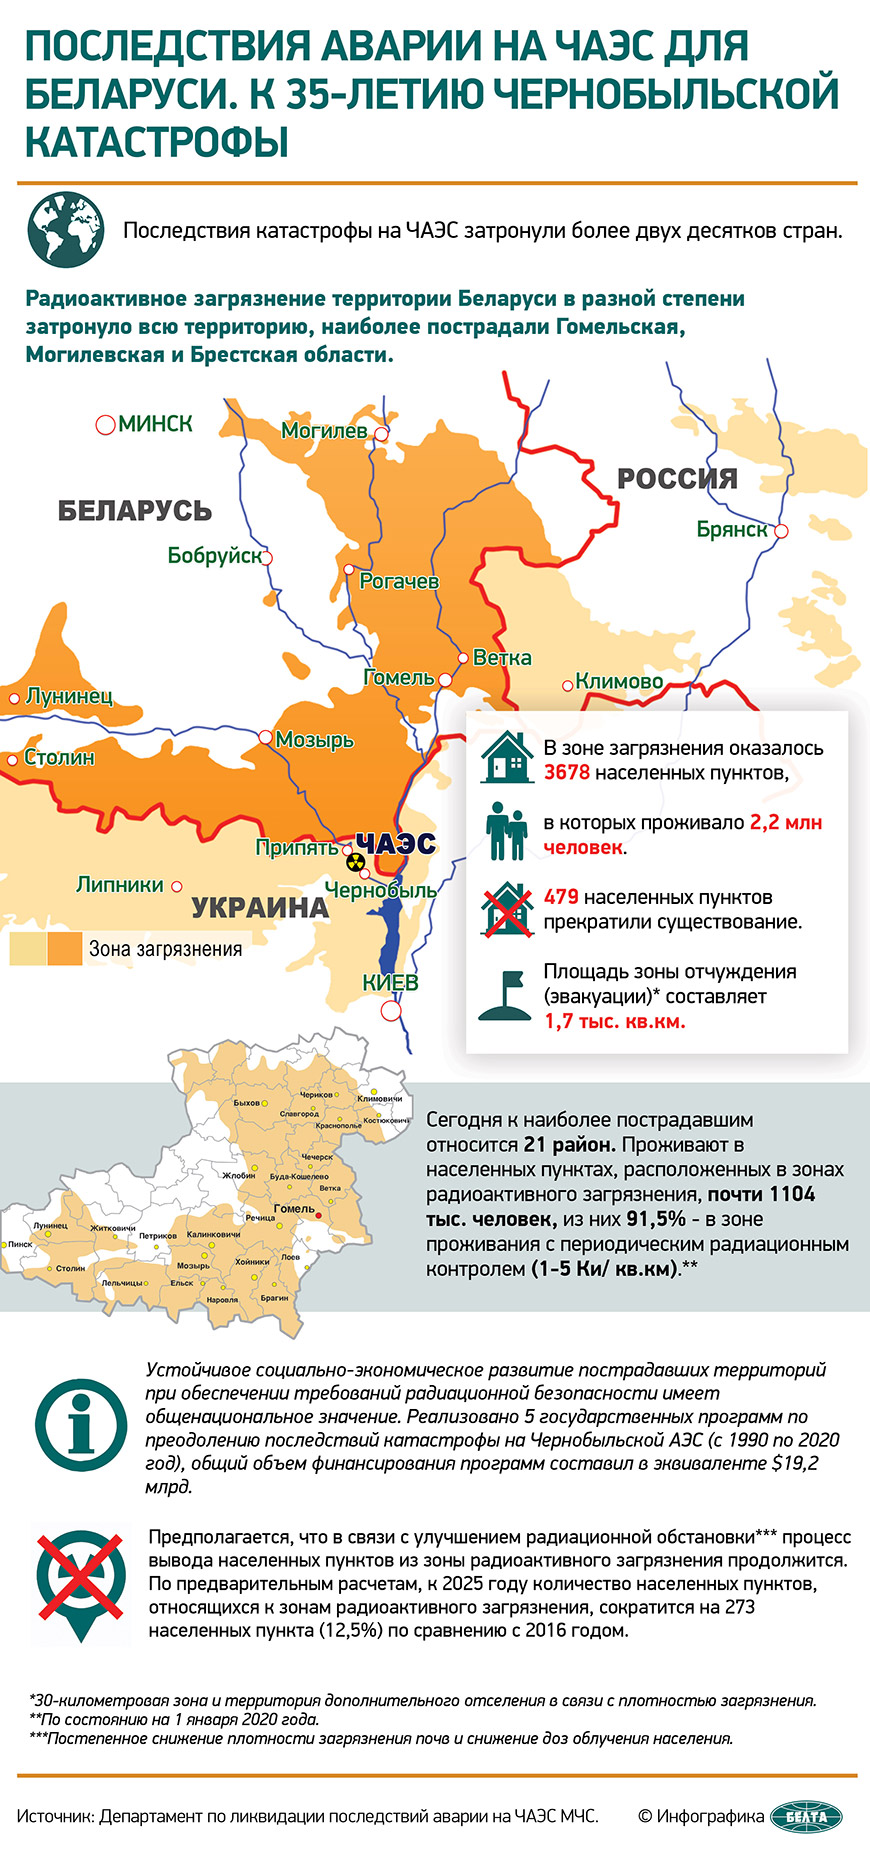 Последствия аварии на ЧАЭС для Беларуси. К 35-летию Чернобыльской катастрофы (инфографика)